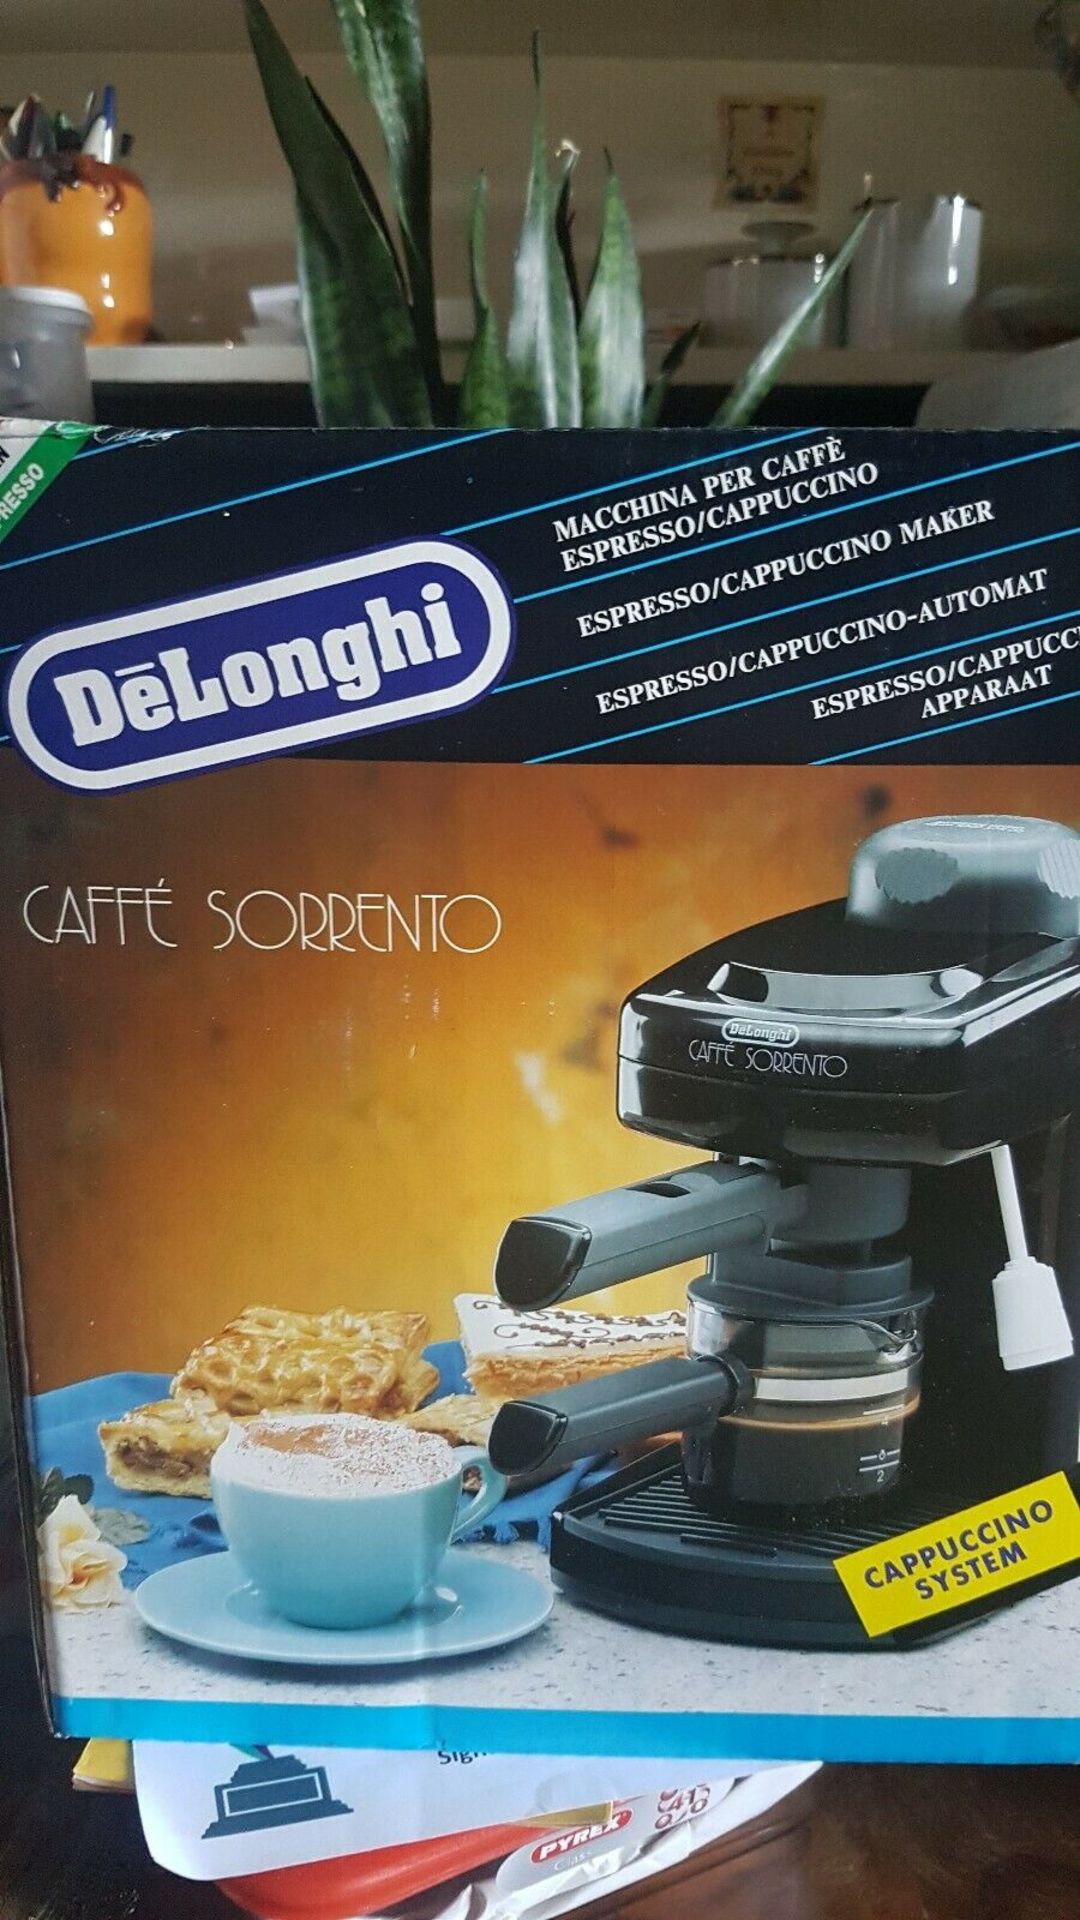 DeLonghi Caffe Sorrento Espresso and Cappuccino Maker